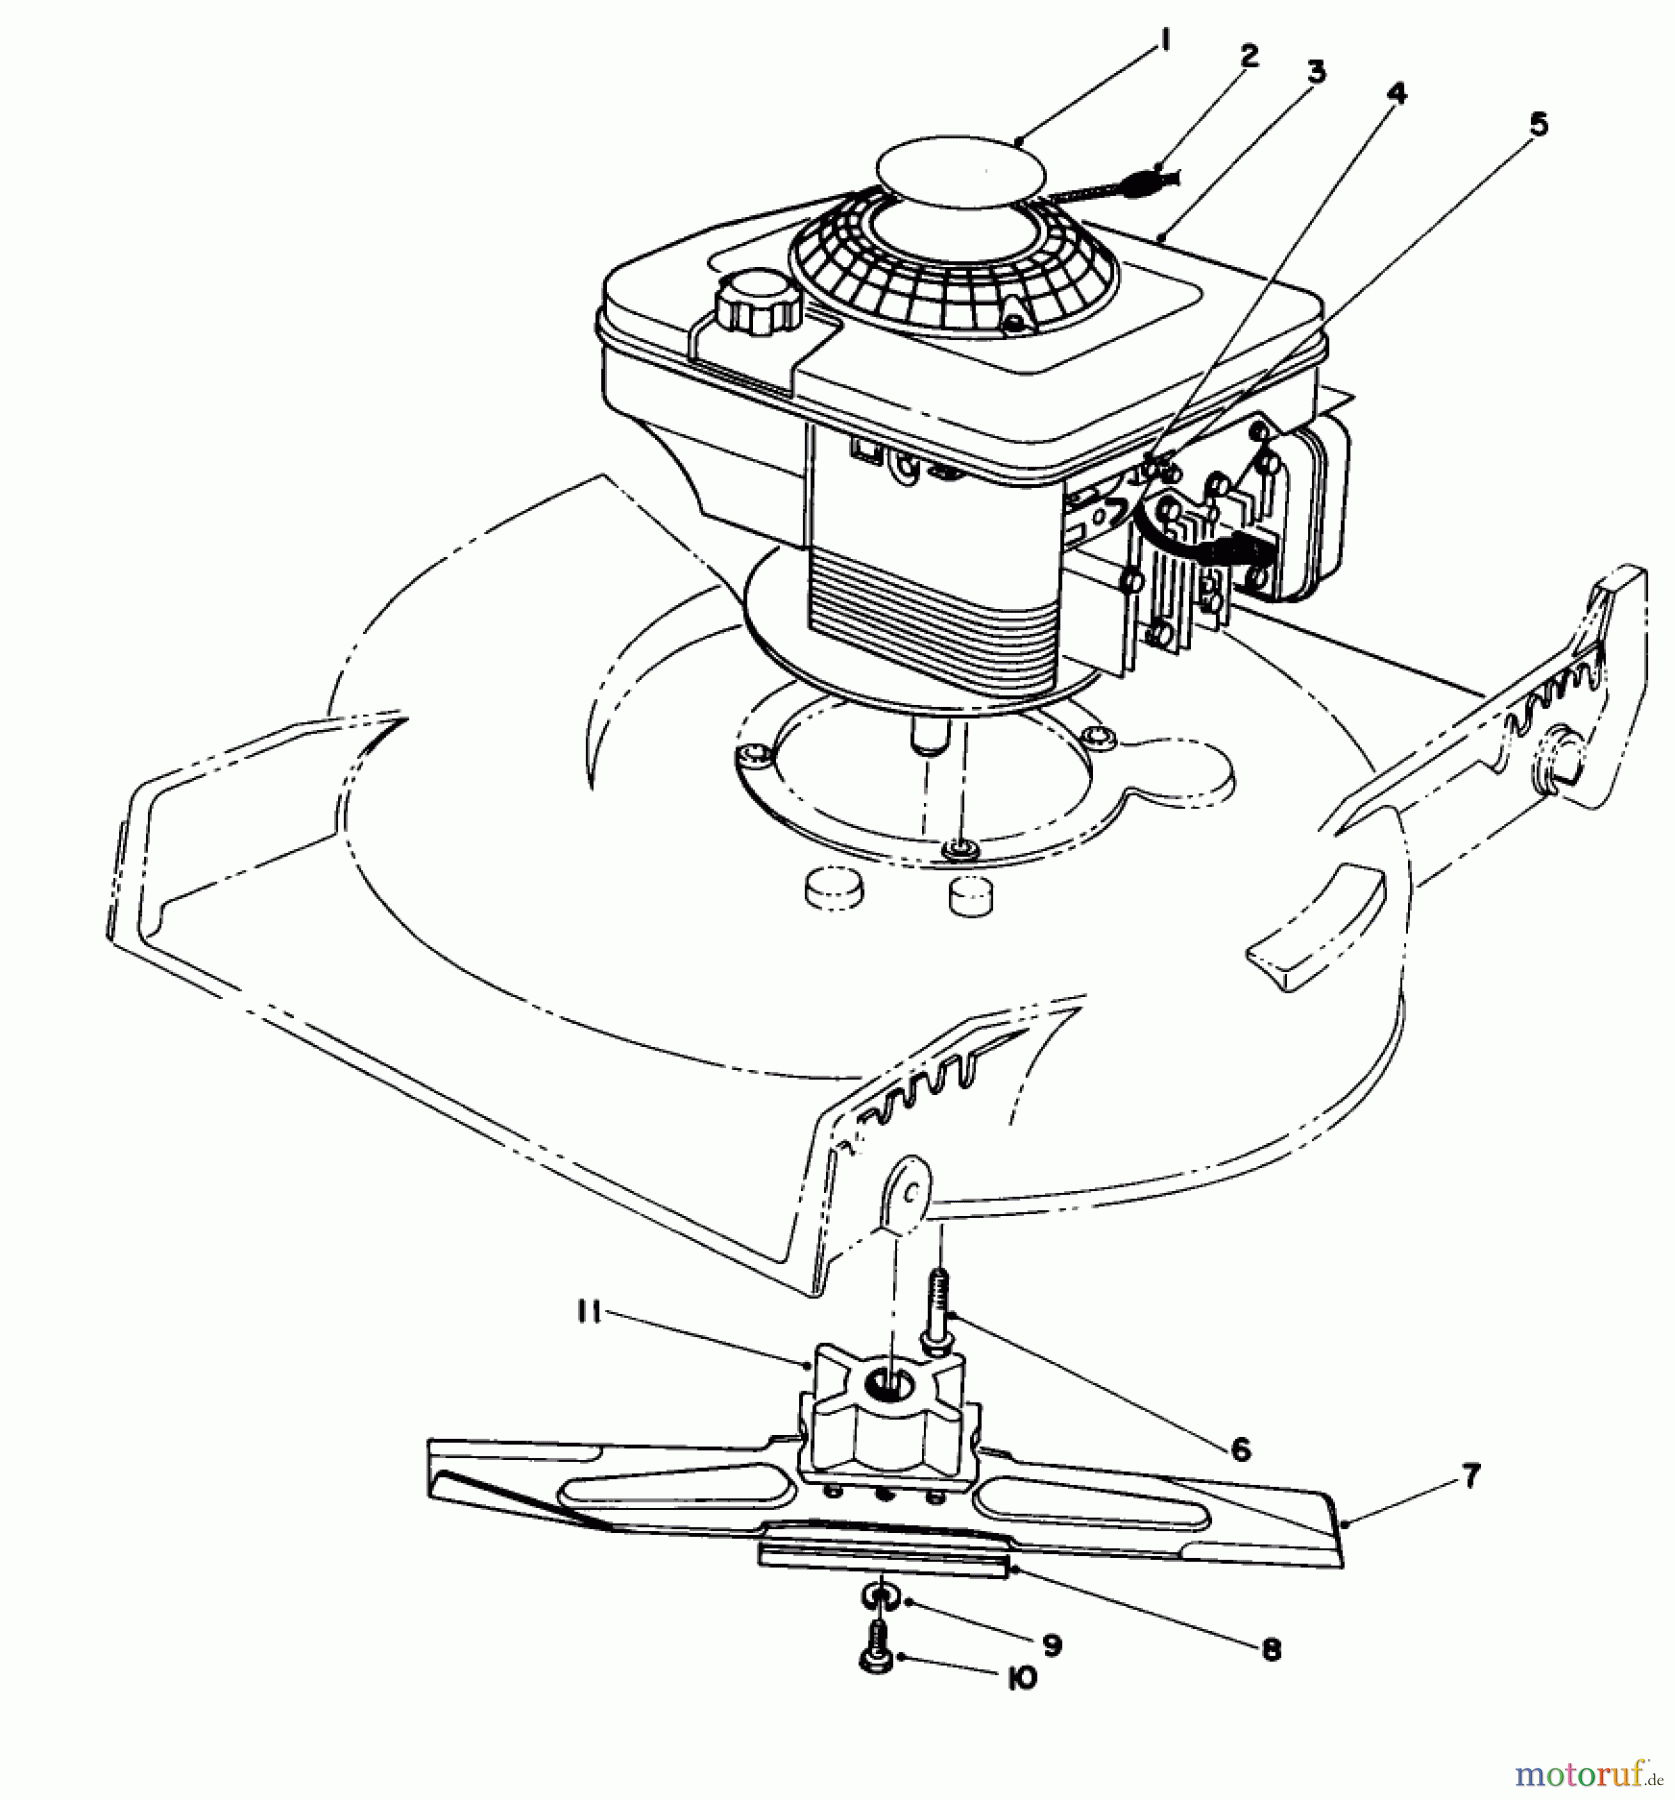  Toro Neu Mowers, Walk-Behind Seite 1 20213 - Toro Lawnmower, 1992 (2000001-2999999) ENGINE ASSEMBLY